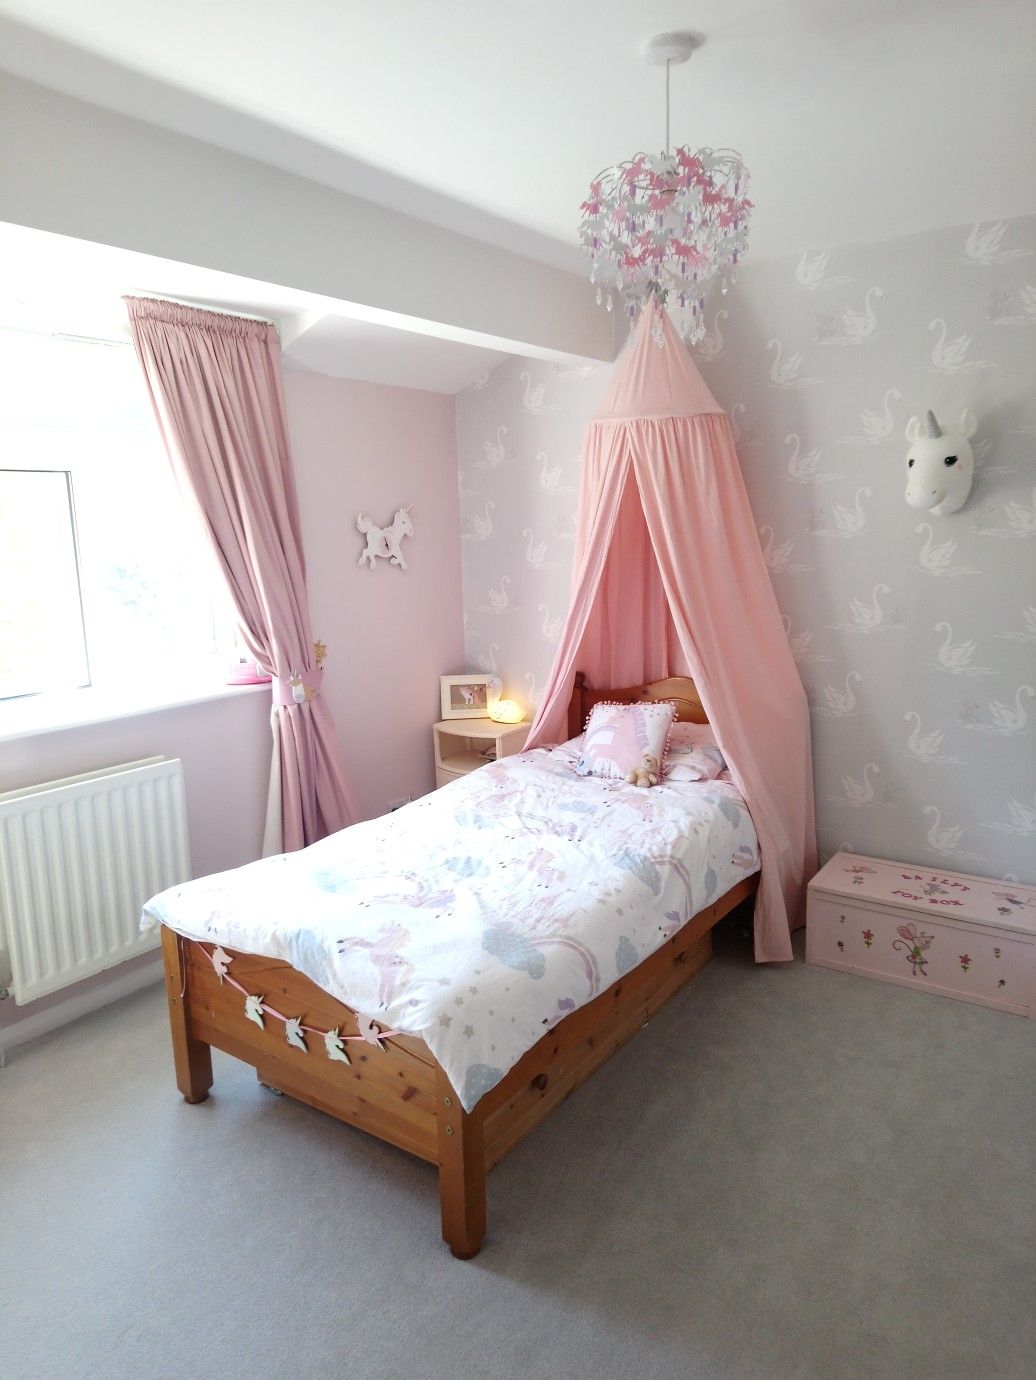 laura ashley swan wallpaper,bedroom,bed,furniture,room,bed frame